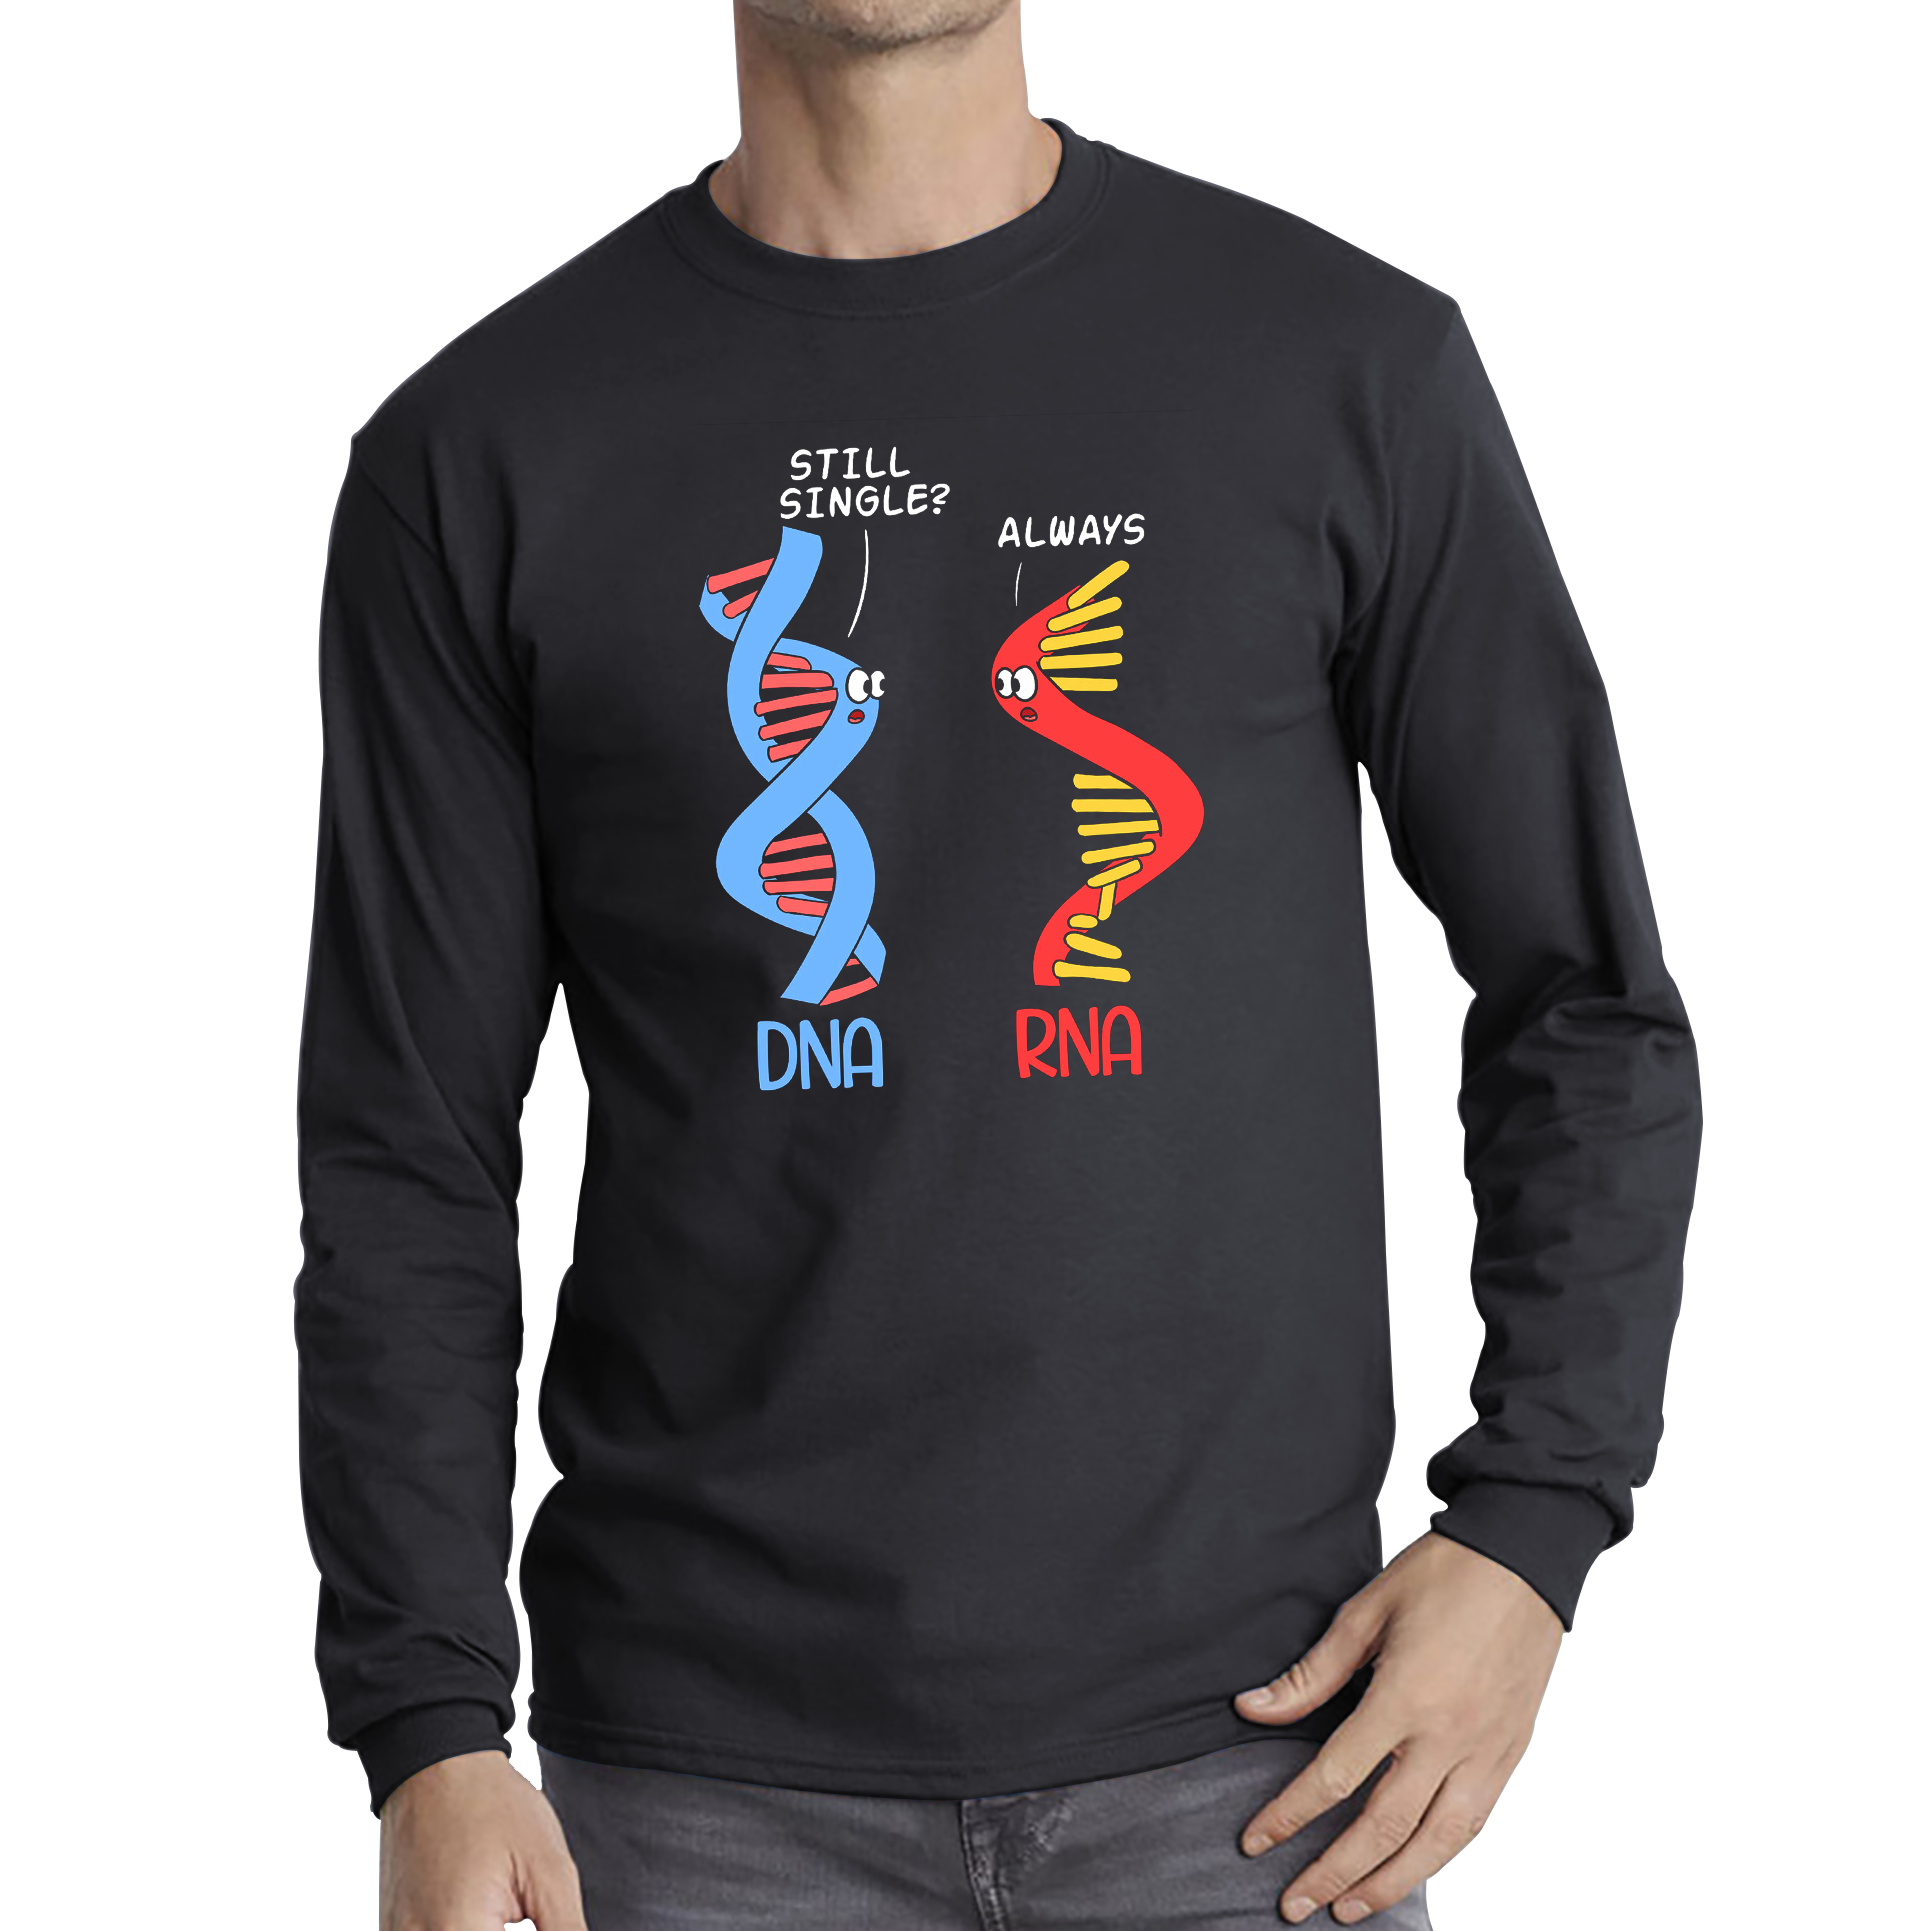 Still Single DNA Always RNA Science Major Biologist Funny Adult Long Sleeve T Shirt